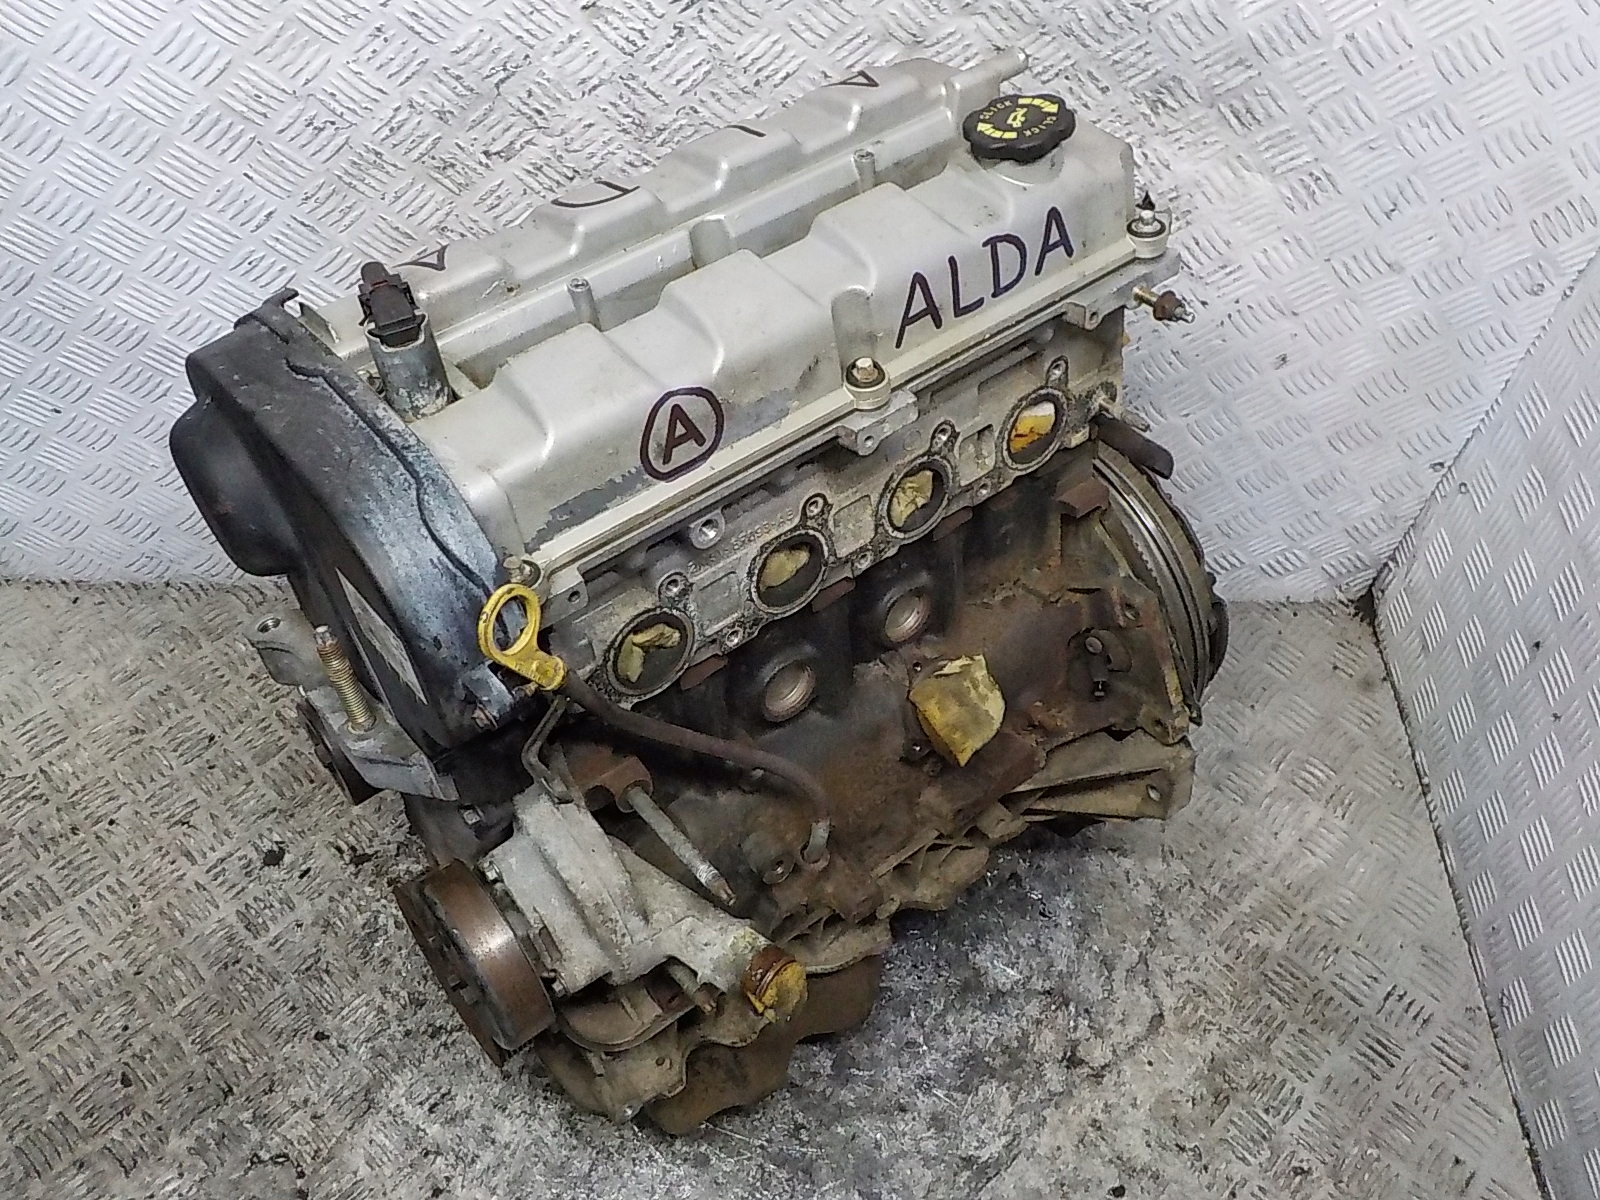 Купить двигатель 170. Ford Alda 2.0 Duratec St. Focus st170 мотор. Alda двигатель. ДВС Alda Форд фокус.